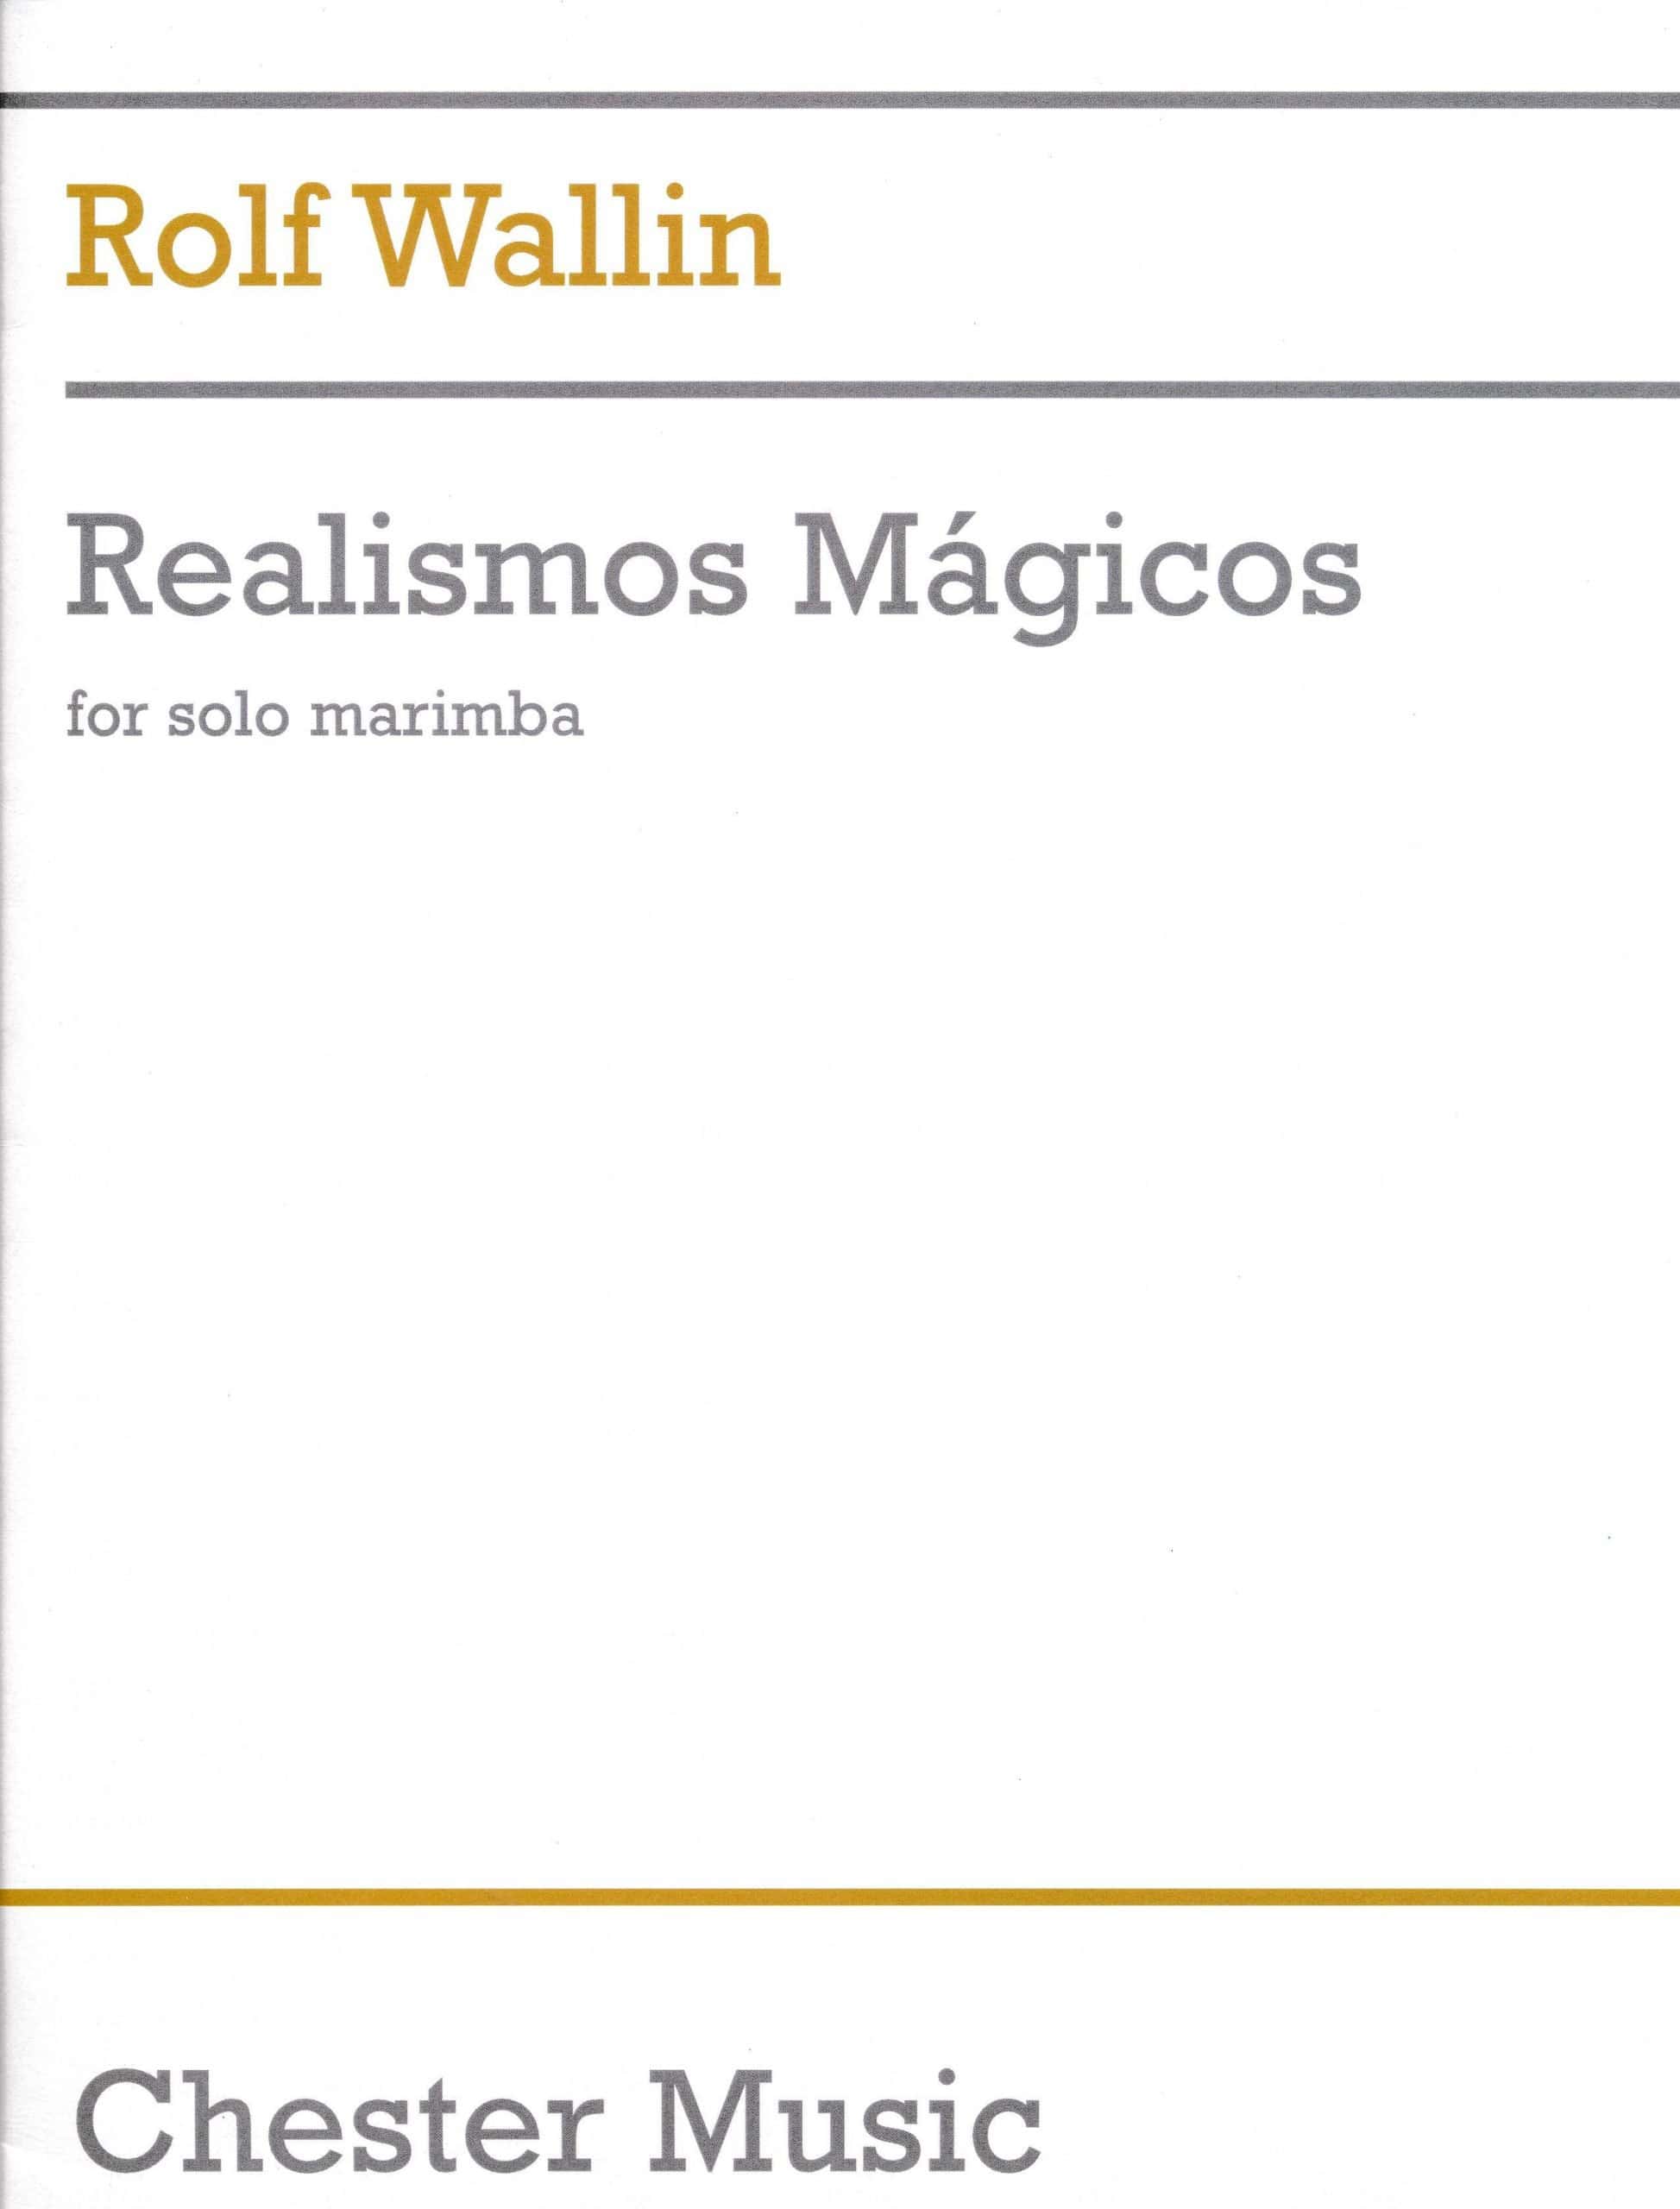 Realismos Magicos by Rolf Wallin